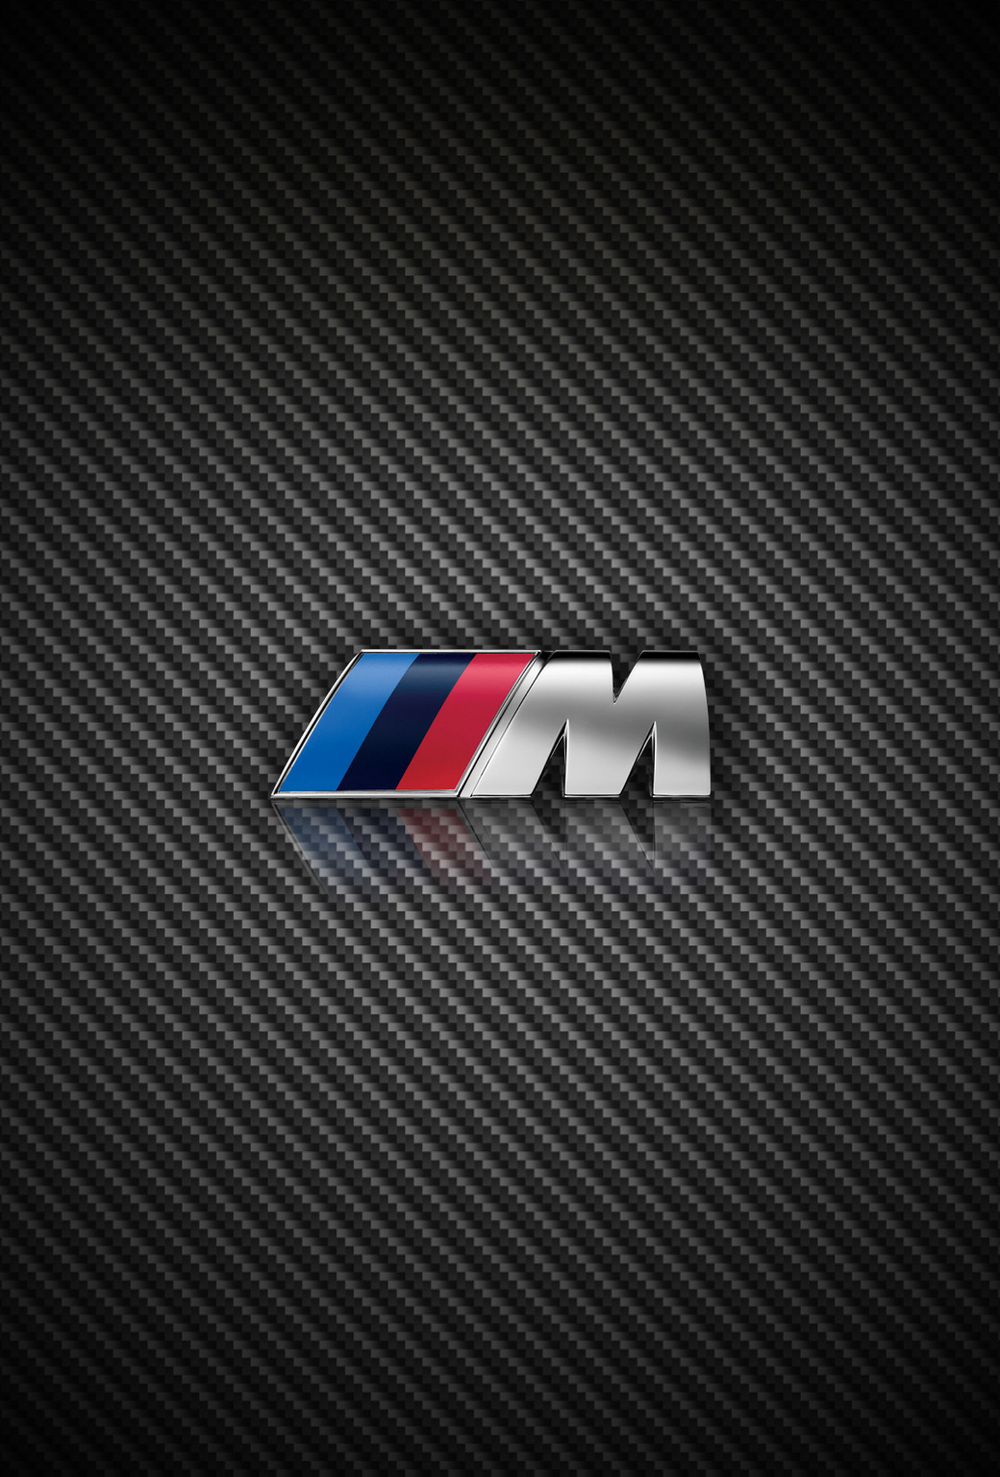 Bmw Logo iPhone Wallpaper Image